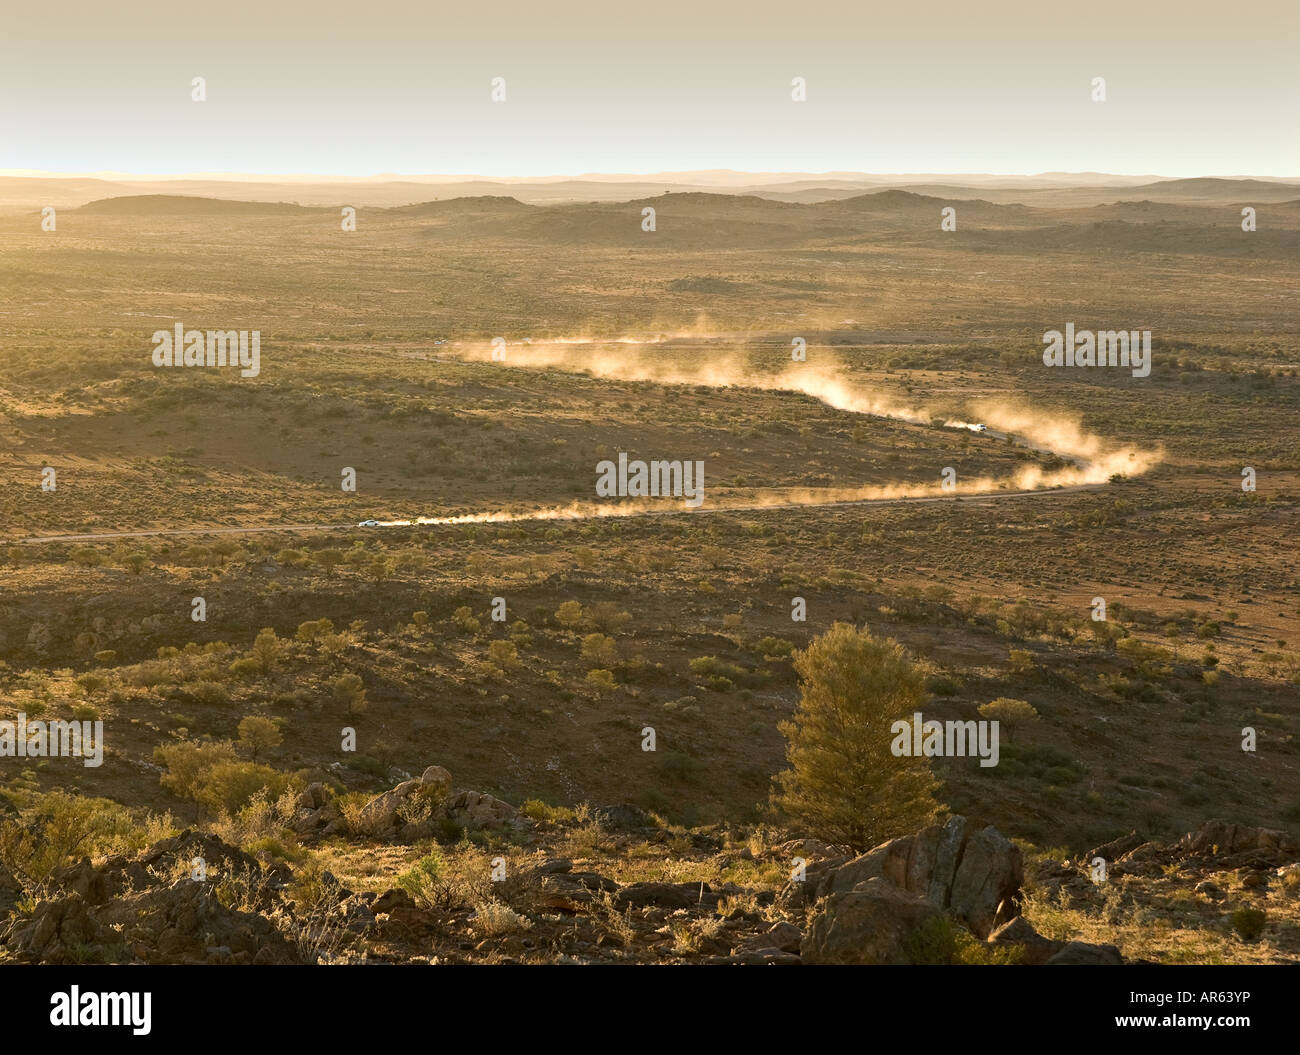 zwei Autos Federn von Staub zu verlassen, wie sie durch die Wüste bei Sonnenuntergang gehen Stockfoto